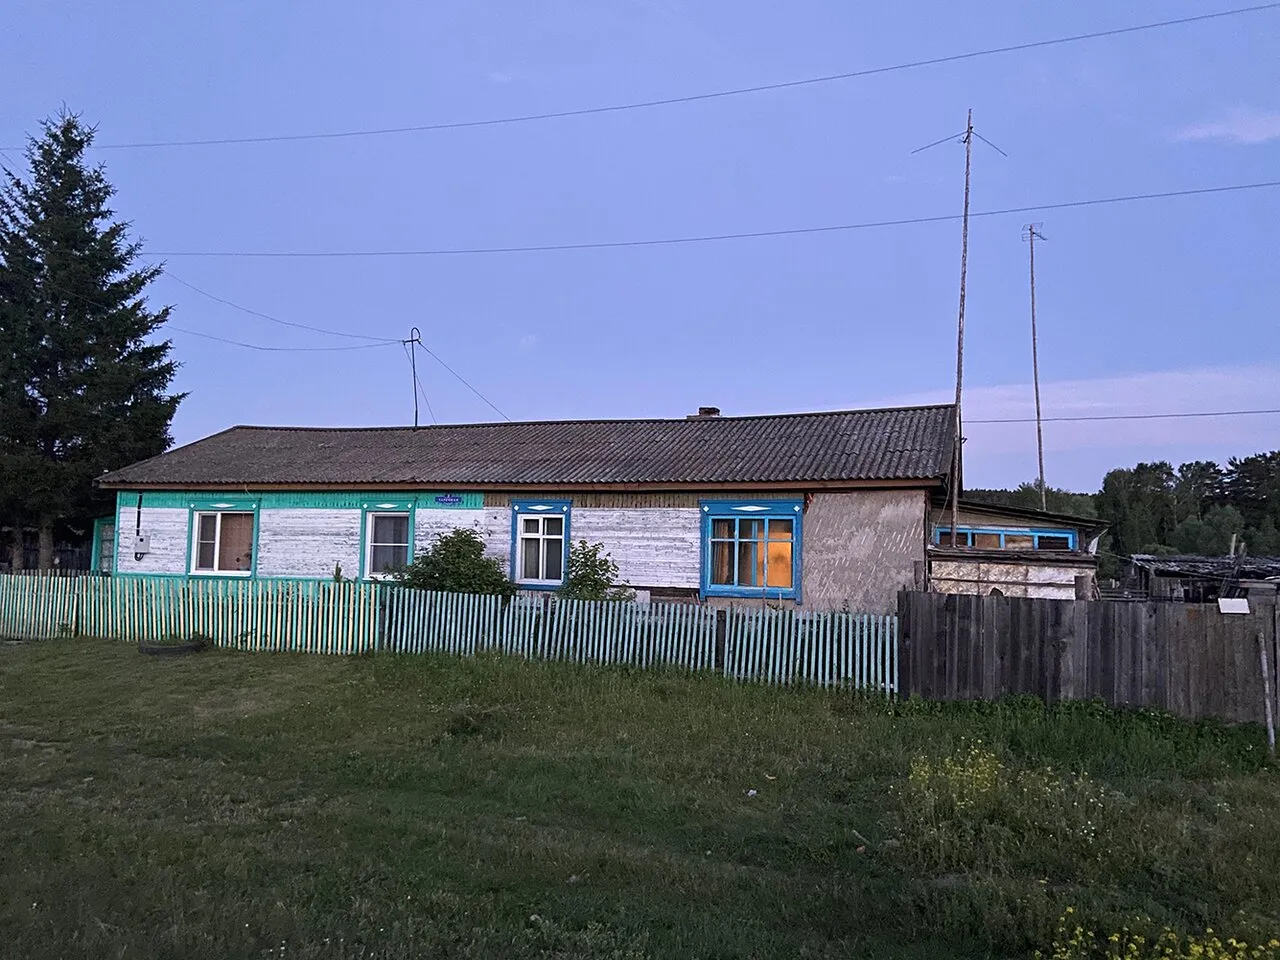 Других развлечений тут нет В Красноярском крае убили 12-летнюю девочку. За  год до этого ее изнасиловали — об этом знала полиция и вся деревня.  Репортаж Ирины Кравцовой — Meduza